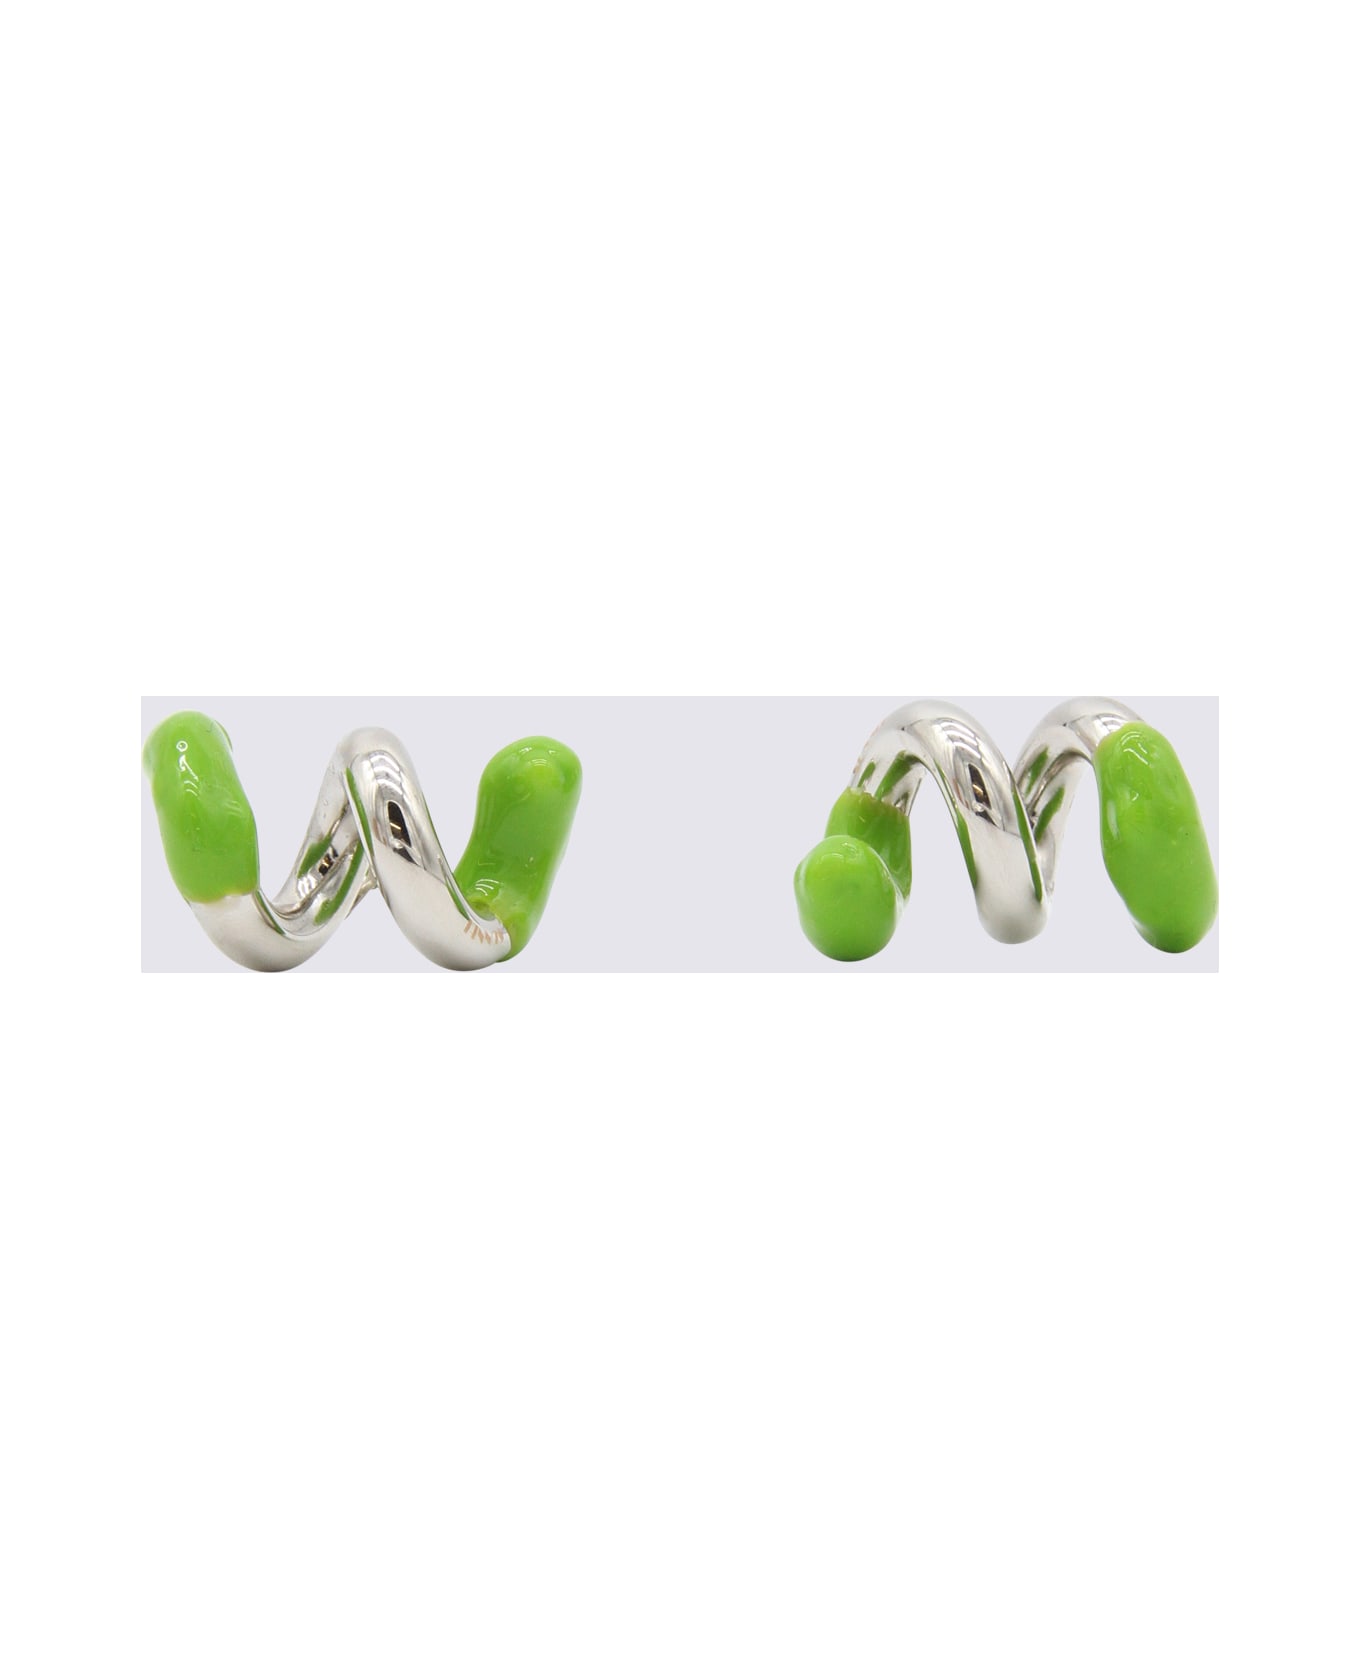 Sunnei Silver And Green Metal Earrings - SILVER FERN GREEN